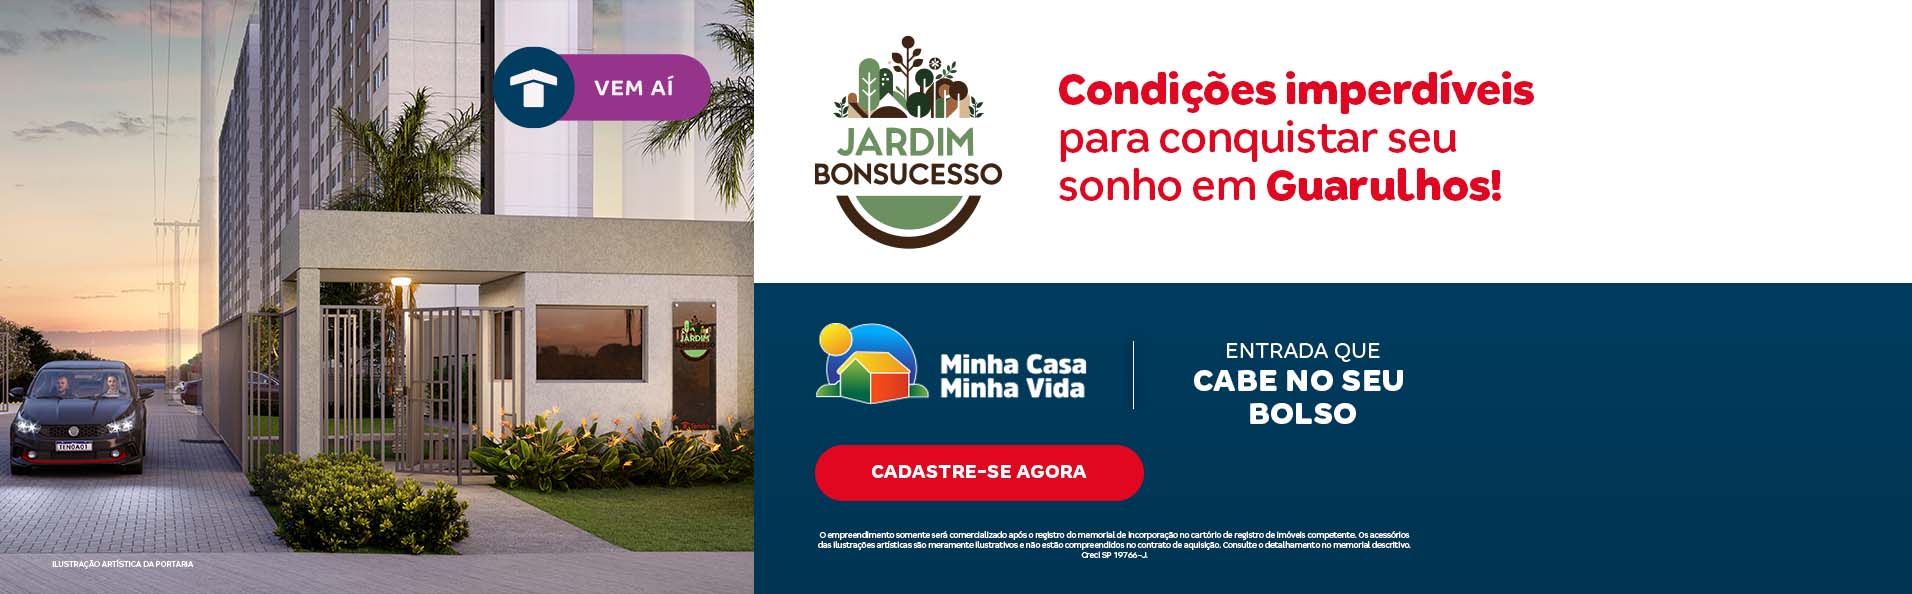 Conheça os apartamentos de 1 e 2 quartos da Construtora Tenda, em Guarulhos - SP | Tenda.com